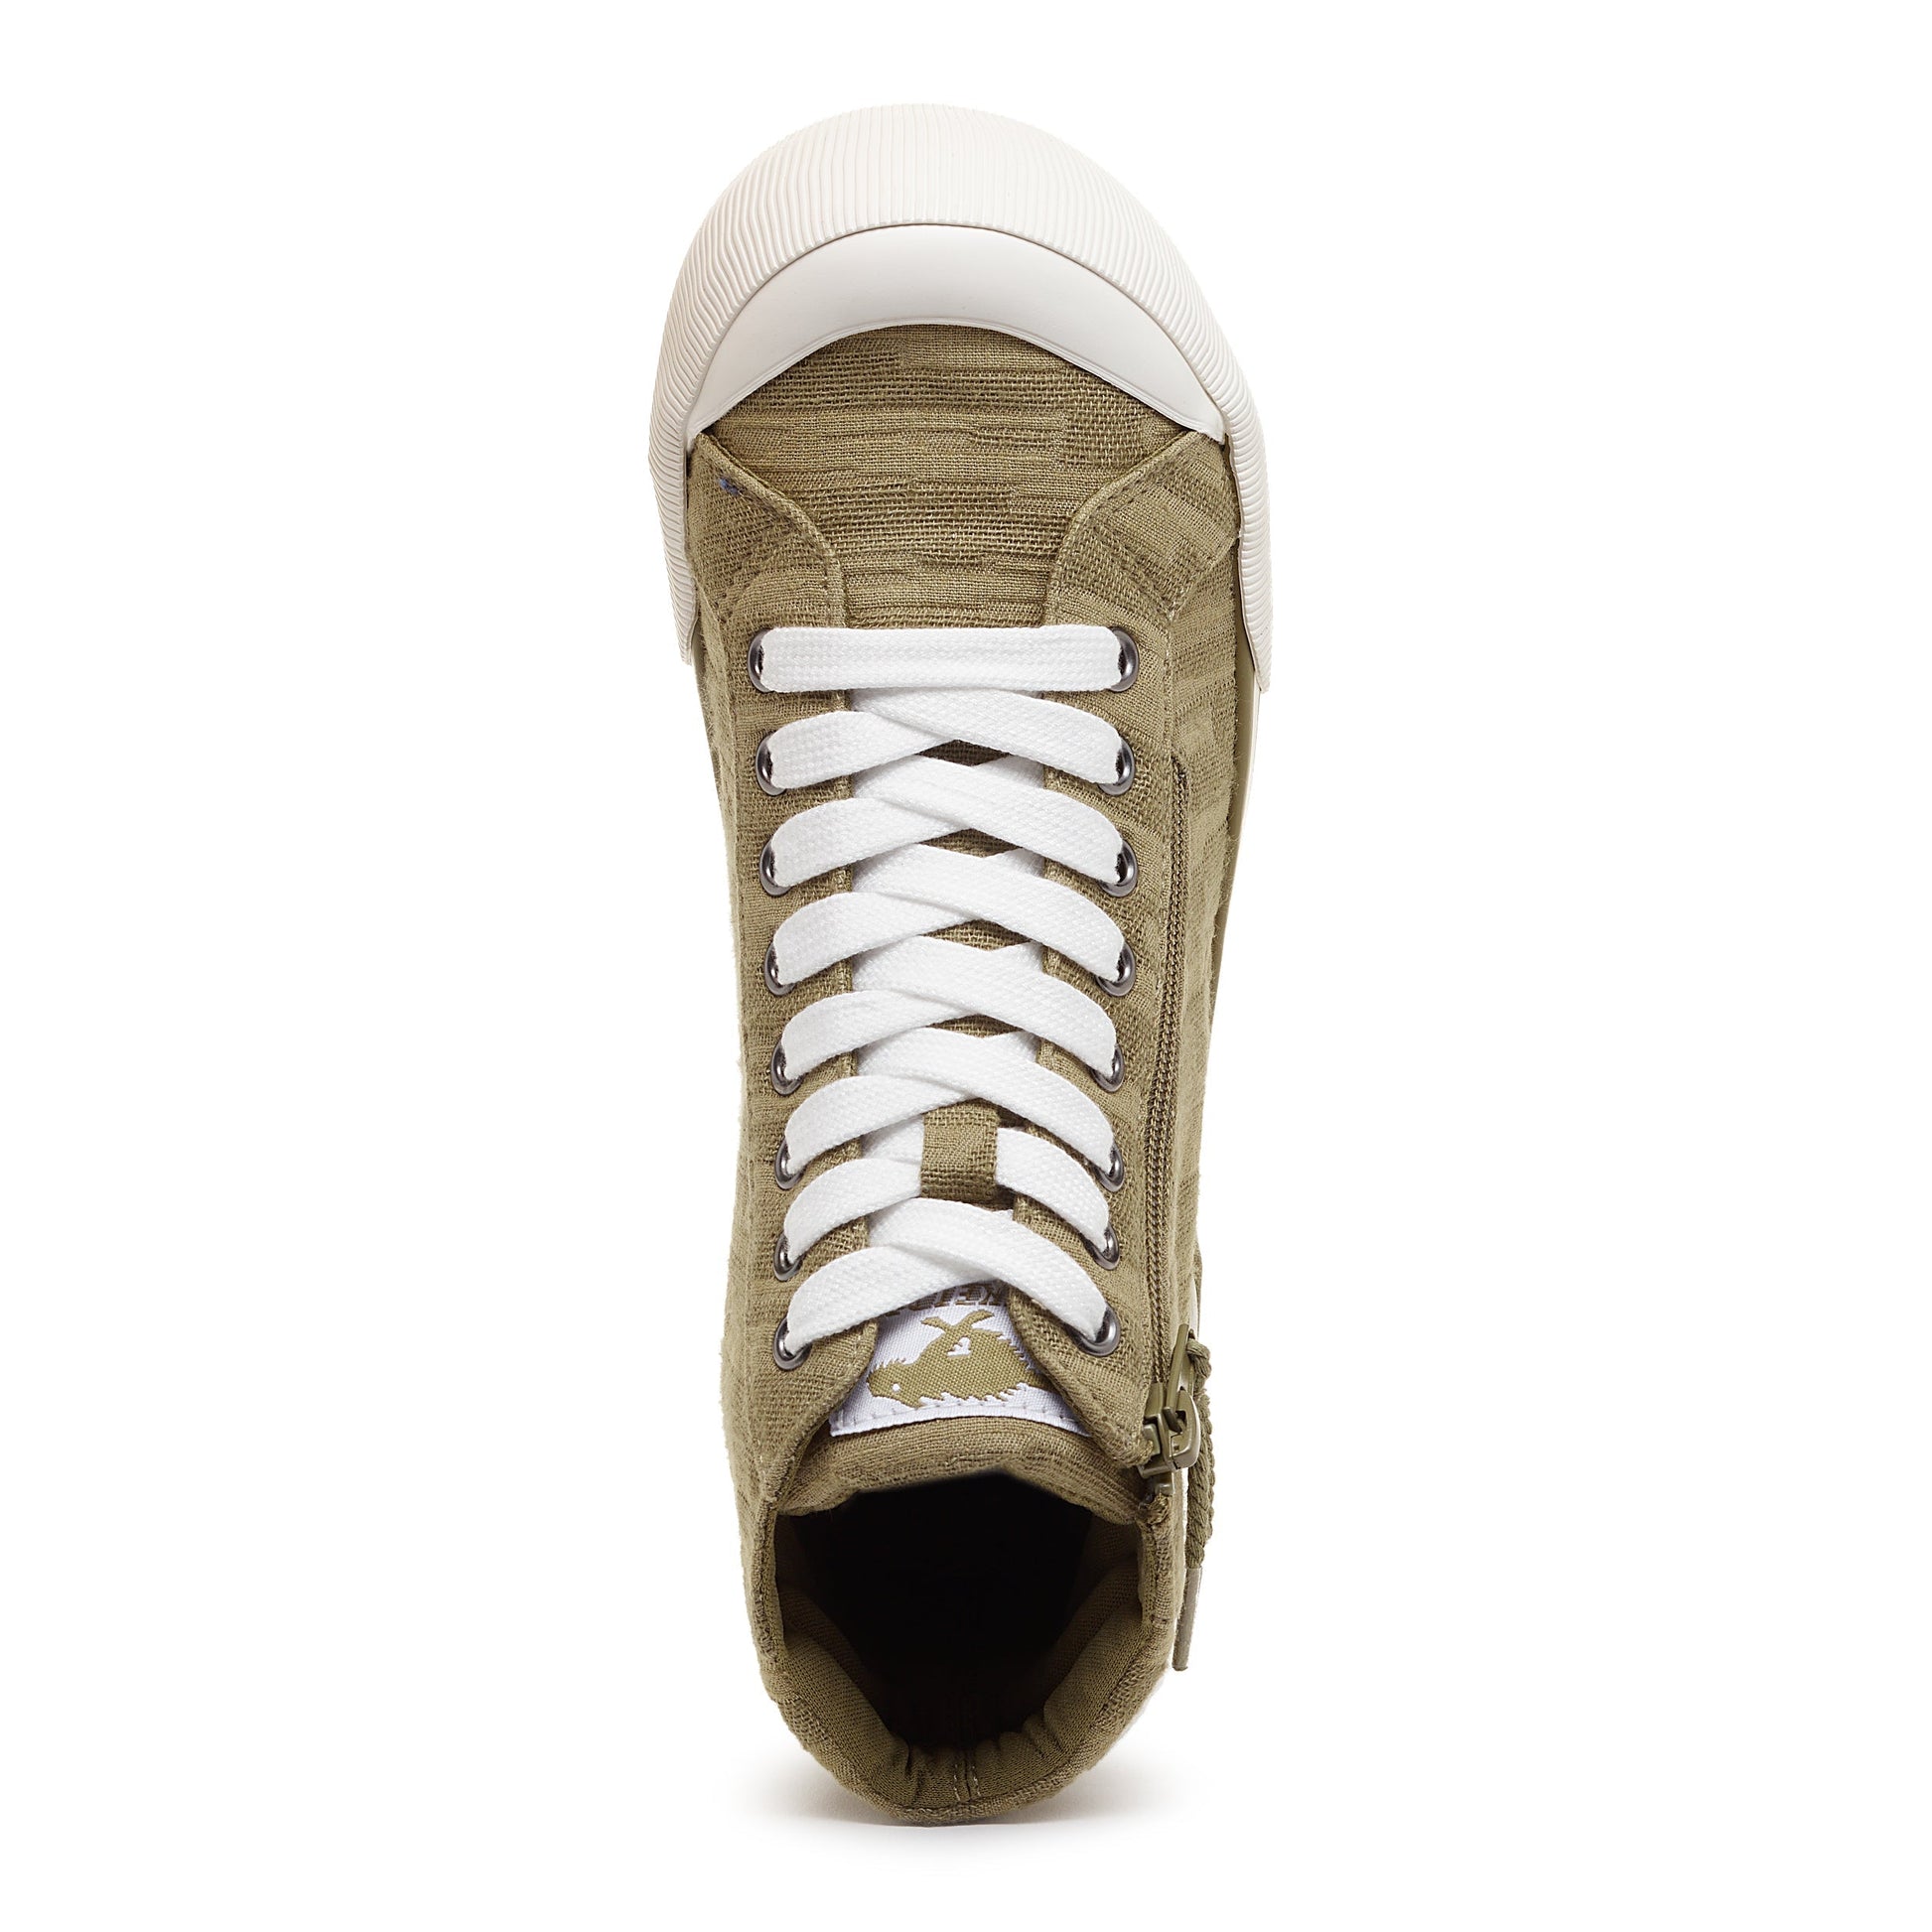 Rocket Dog® Women's Jazzin Olive Textured High Top Sneaker